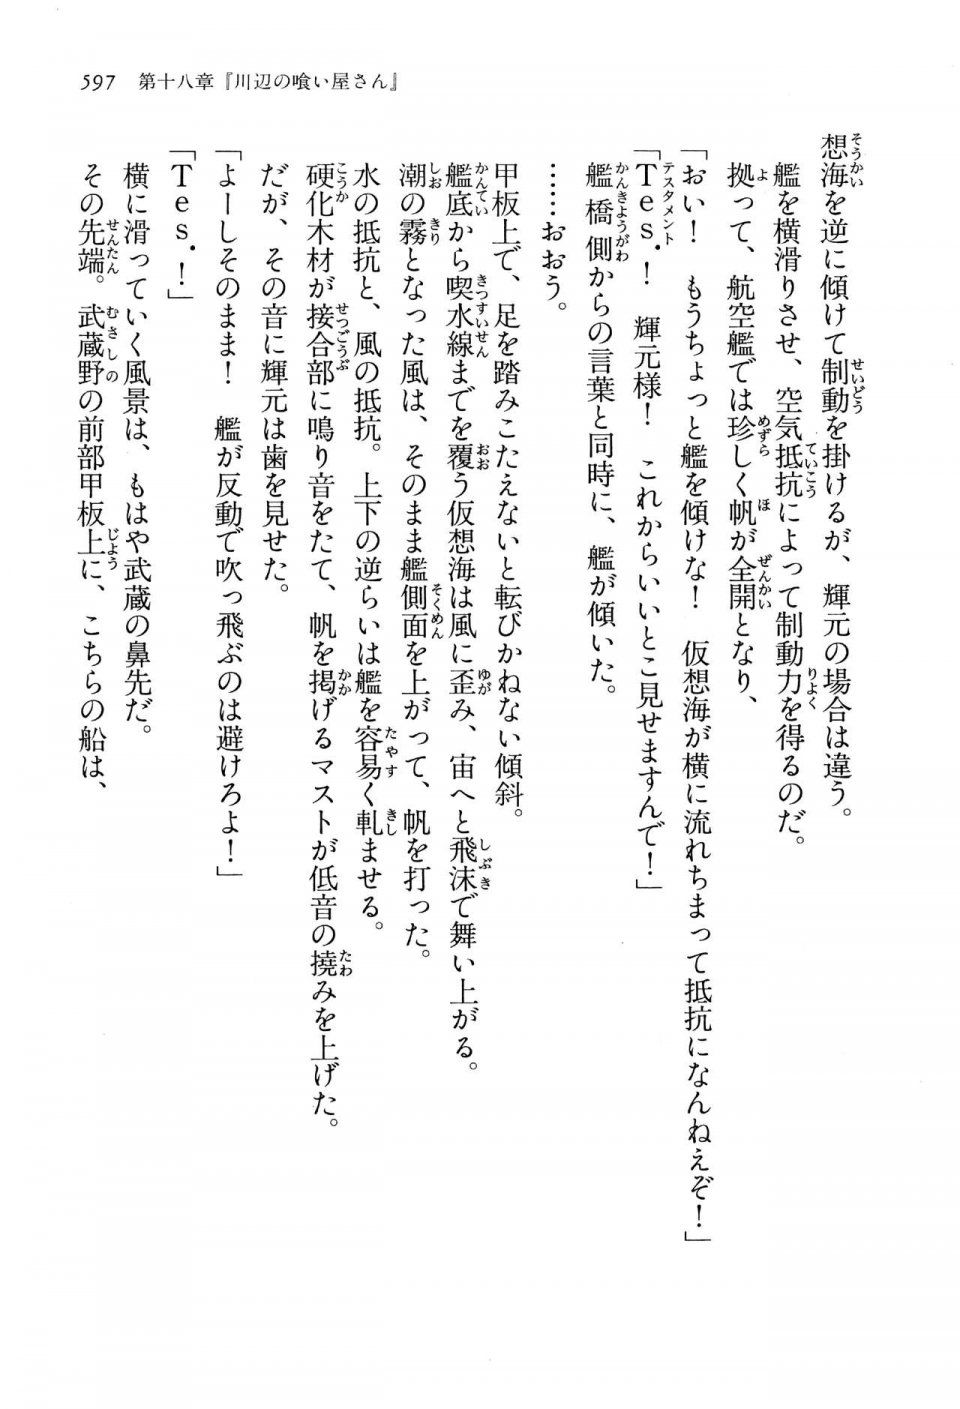 Kyoukai Senjou no Horizon LN Vol 13(6A) - Photo #597